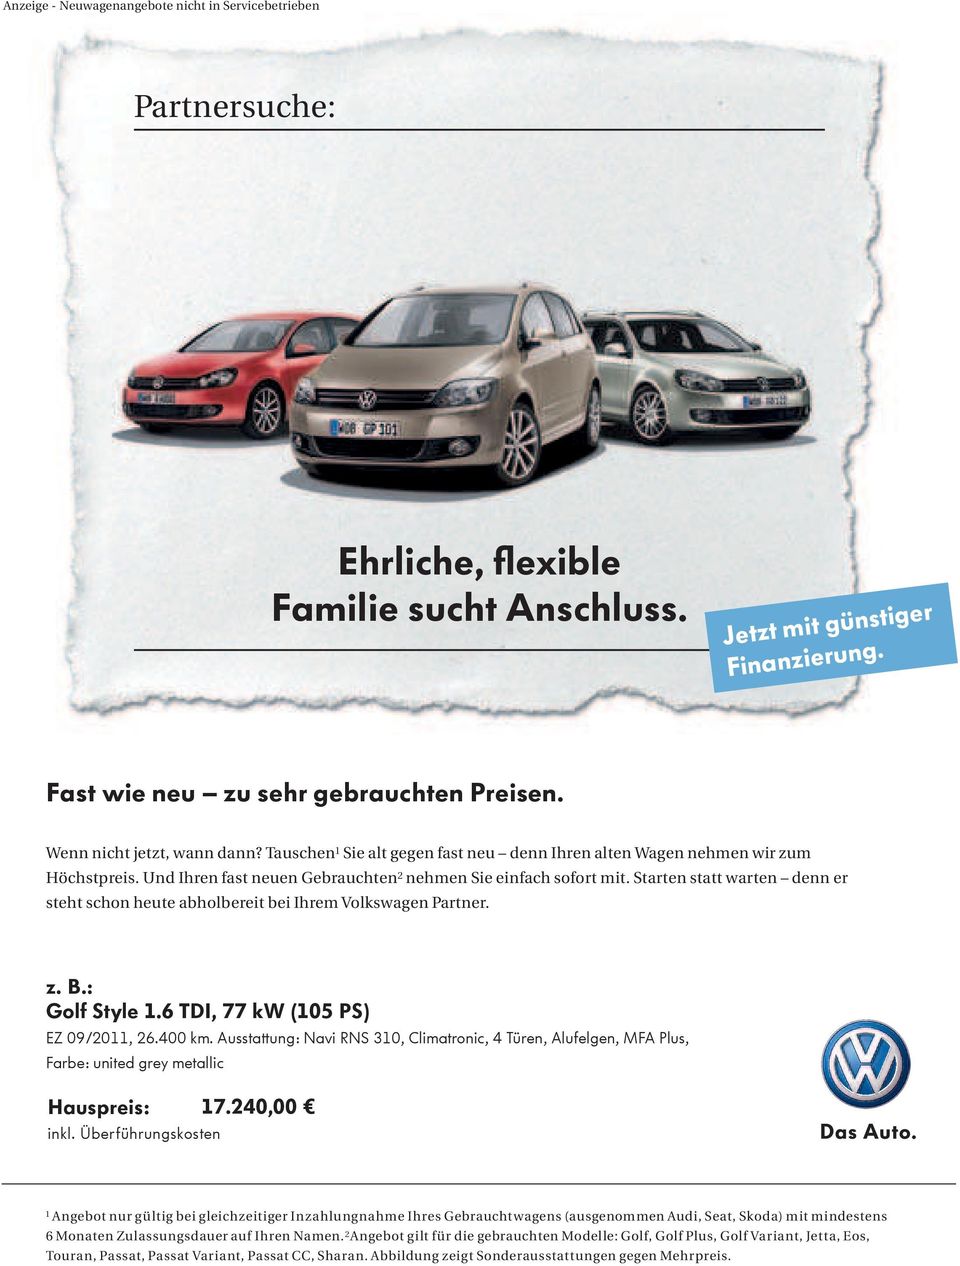 Starten statt warten denn er steht schon heute abholbereit bei Ihrem Volkswagen Partner. z. B.: Golf Style 1.6 TDI, 77 kw (105 PS) EZ 09/2011, 26.400 km.